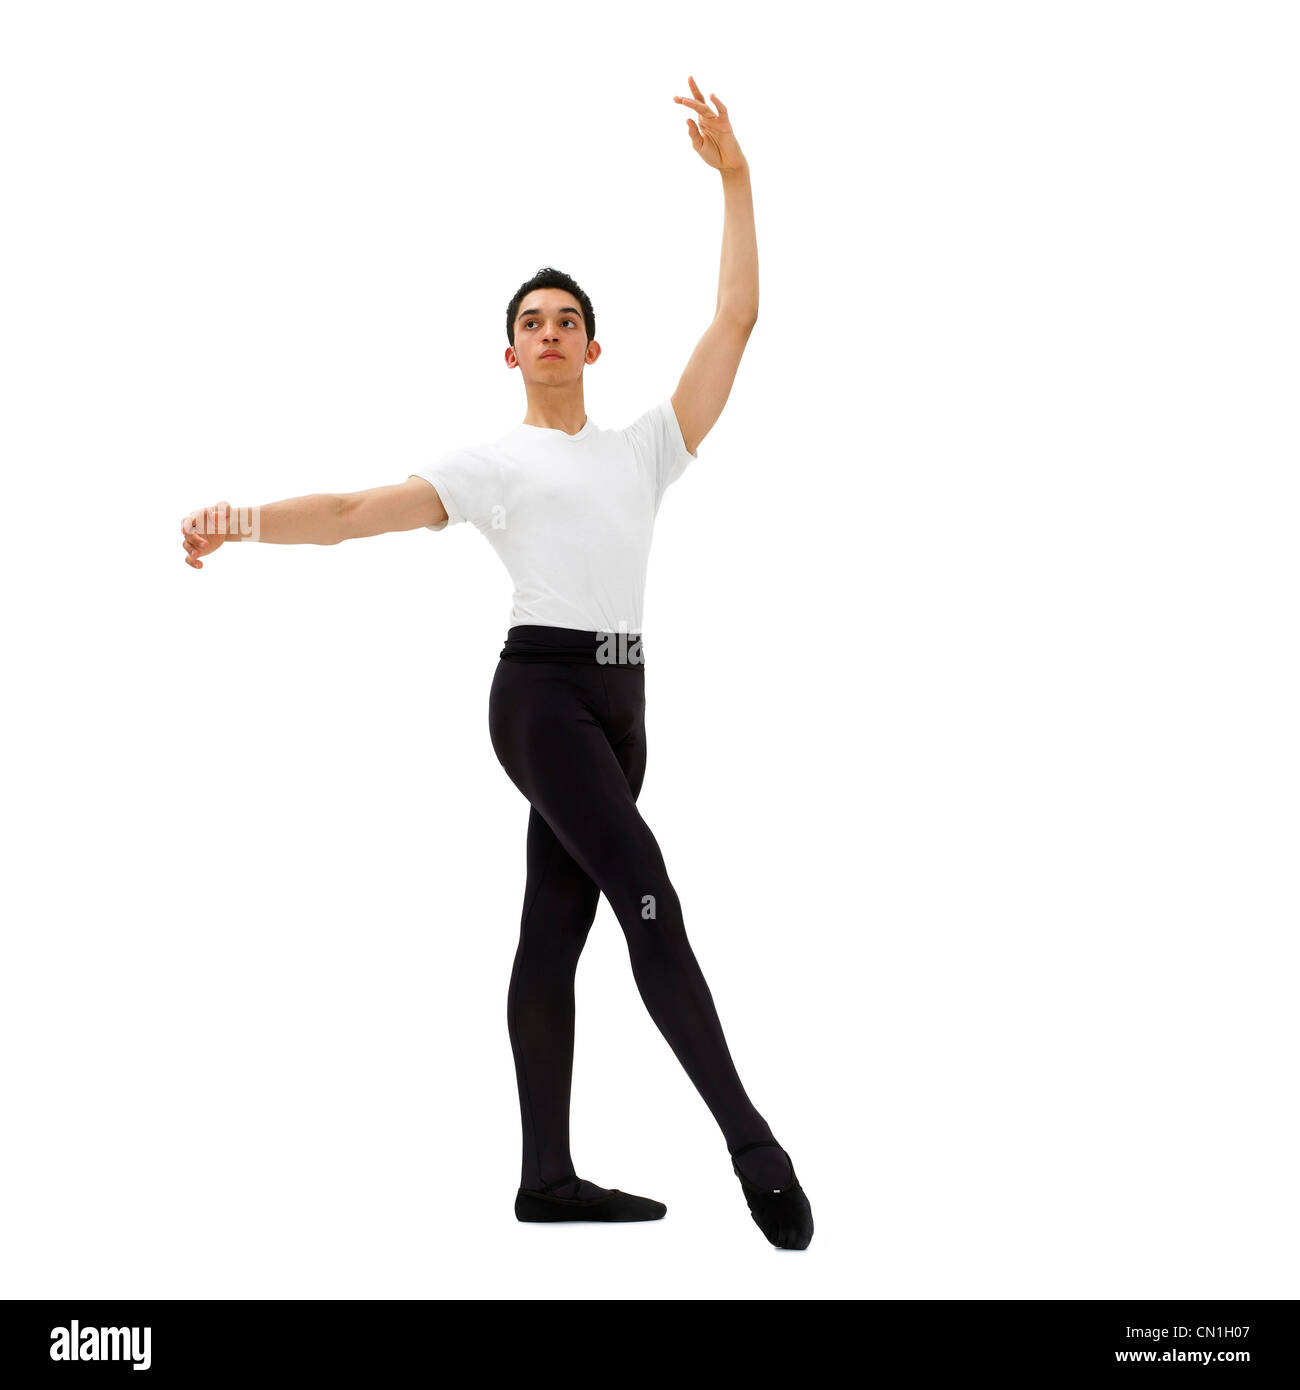 Bailarina de Ballet masculino Foto de stock